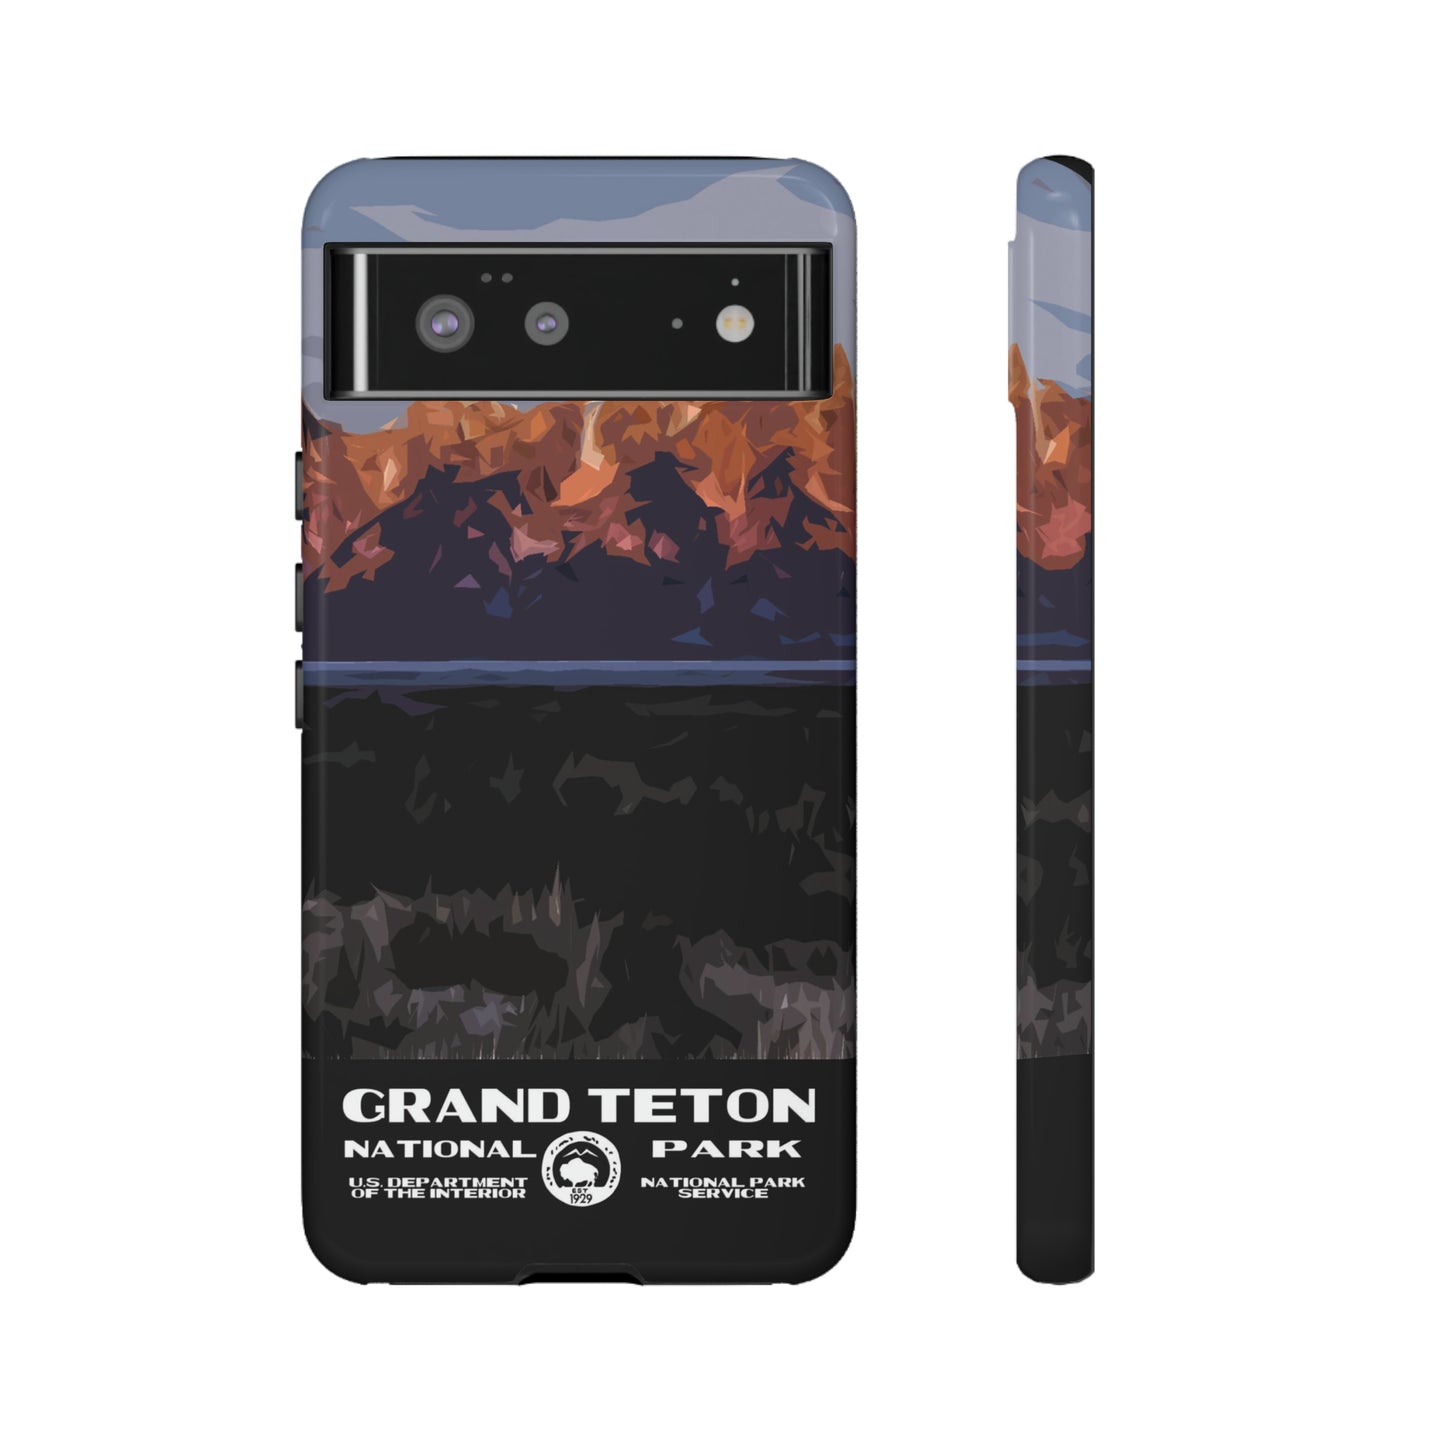 Grand Teton National Park Phone Case